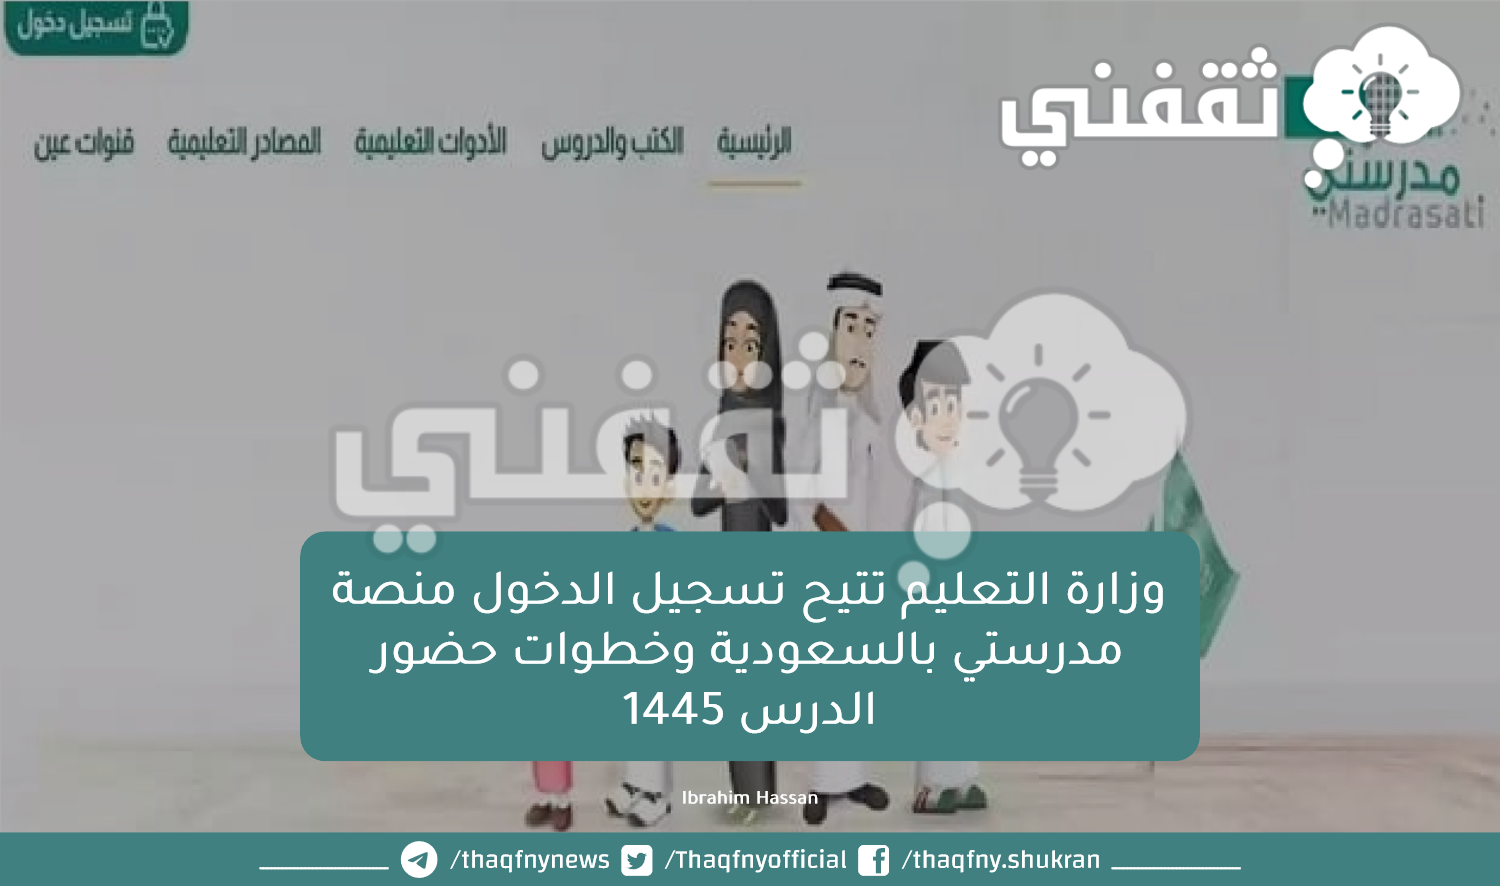 وزارة التعليم تتيح تسجيل الدخول منصة مدرستي بالسعودية وخطوات حضور الدرس 1445.png